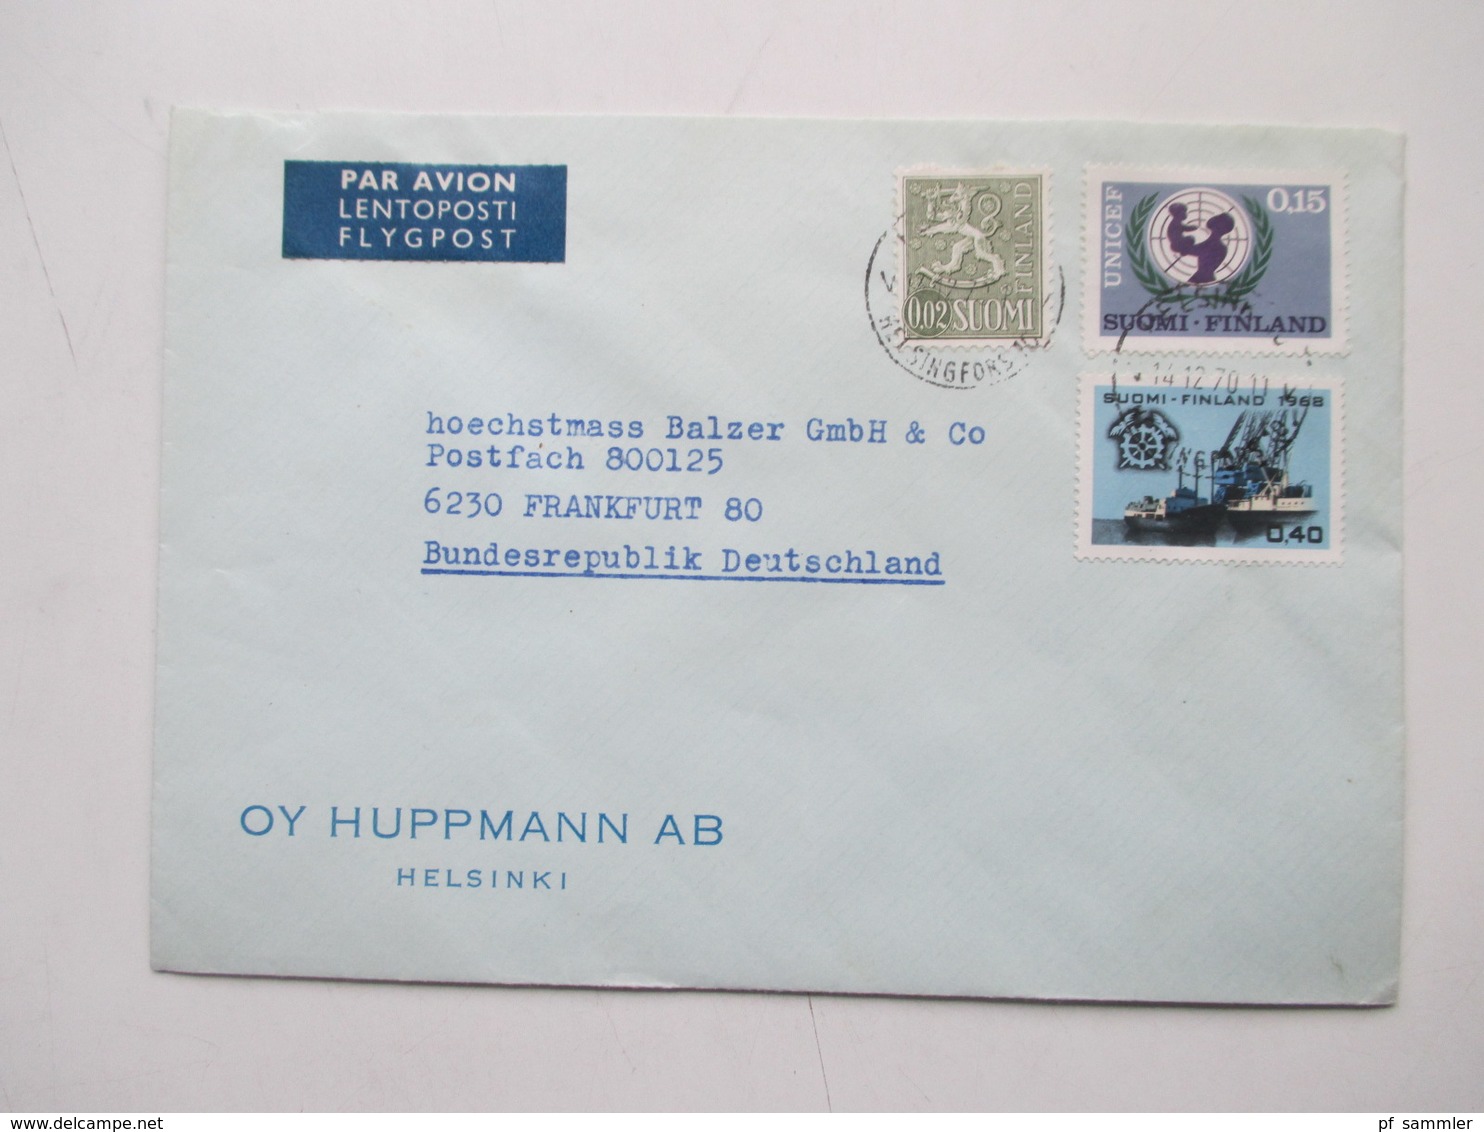 Finnland 1958 - 74 Luftpost Briefe 42 Stk. Firmen Korrespondenz auch Freimarke Nr. 505 Flugzeug mit Aufdruck usw.